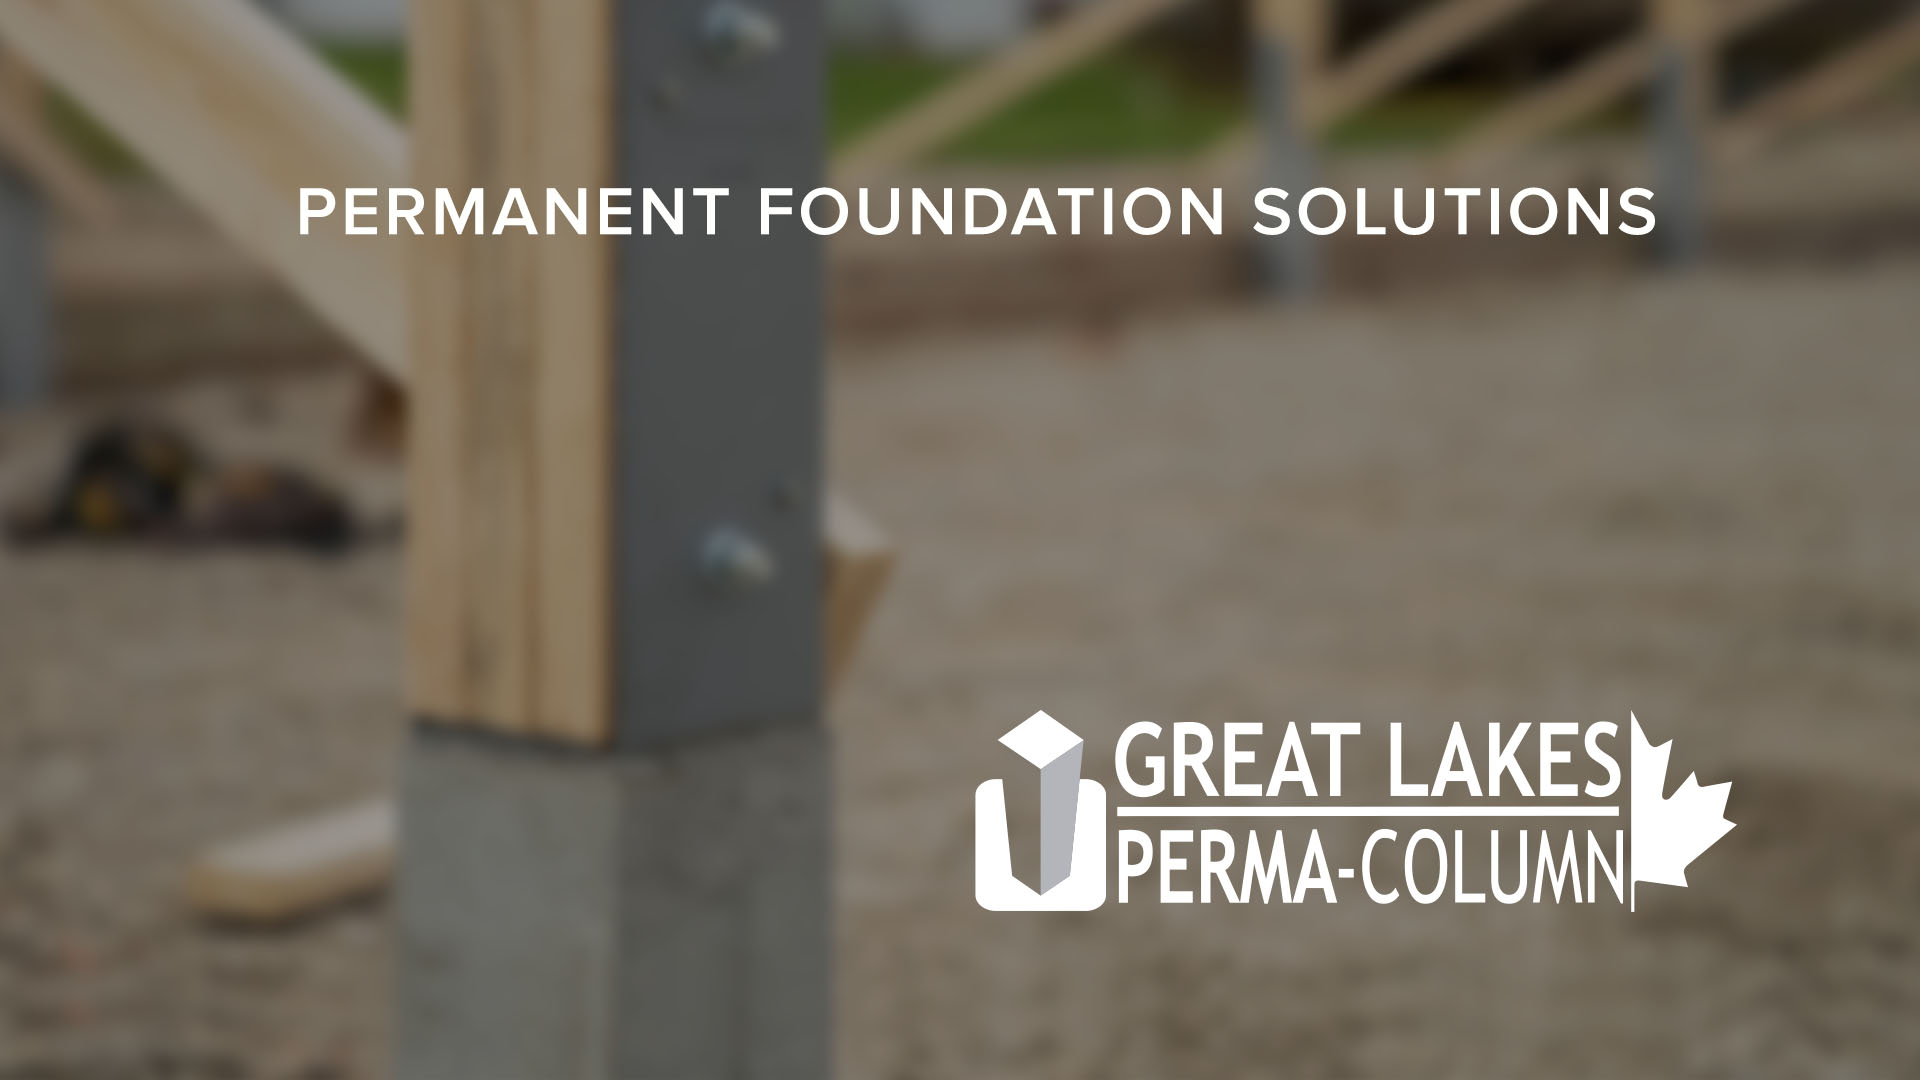 Great Lakes Perma-Column